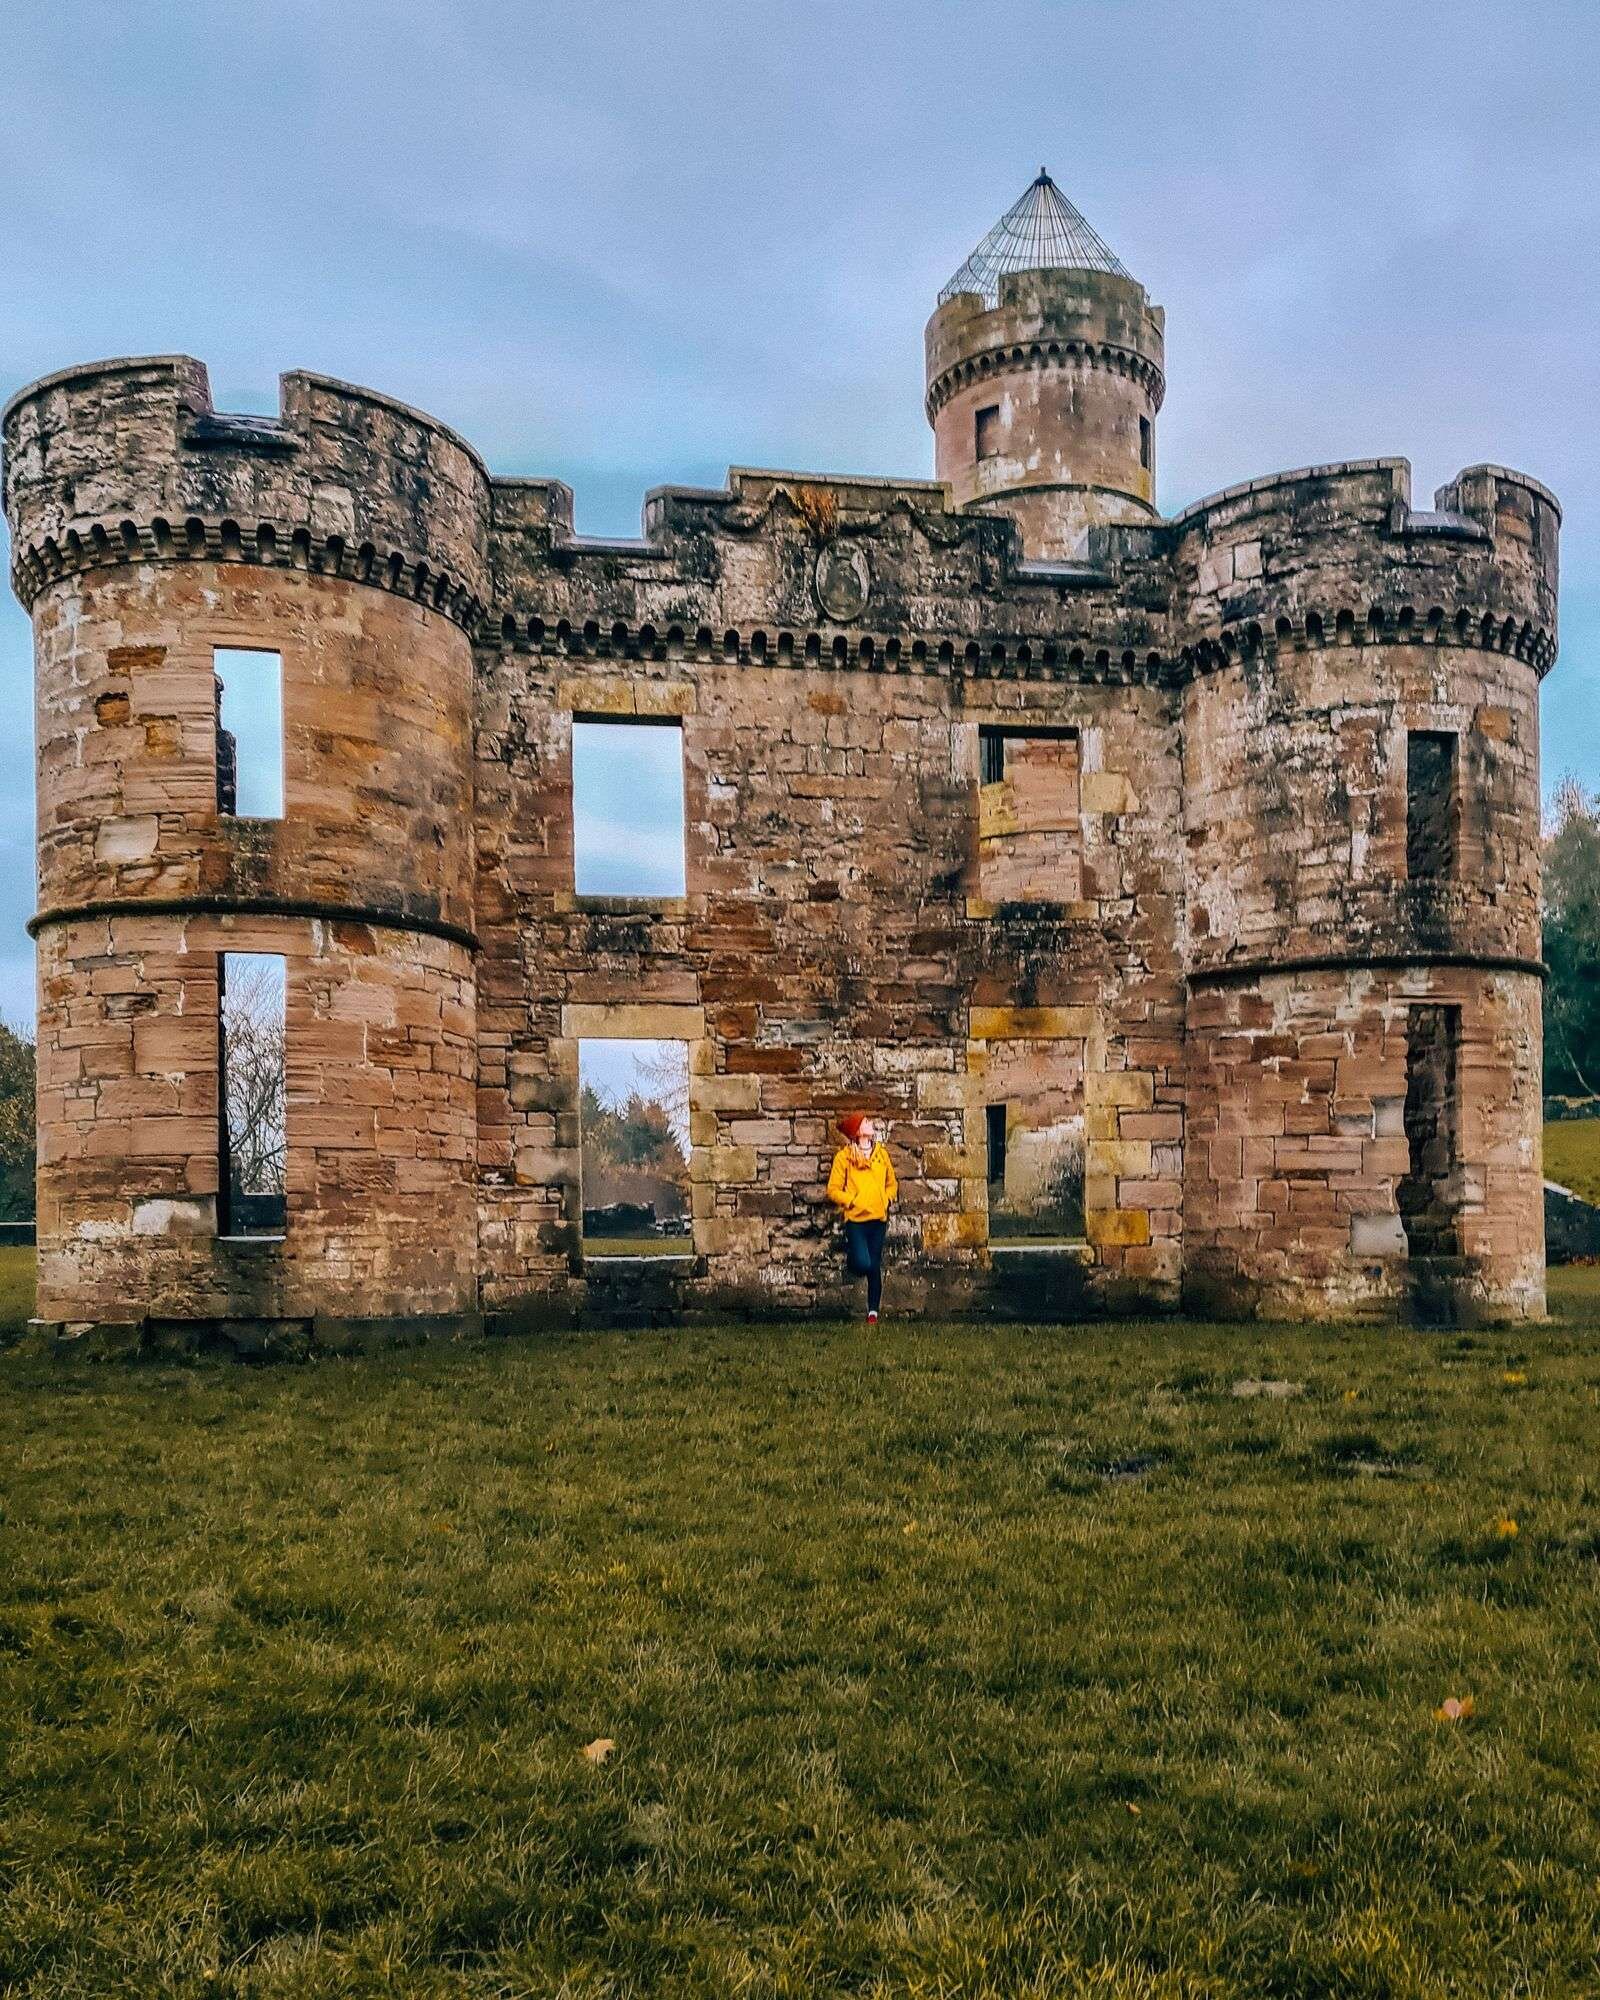 Eglinton Castle ruins